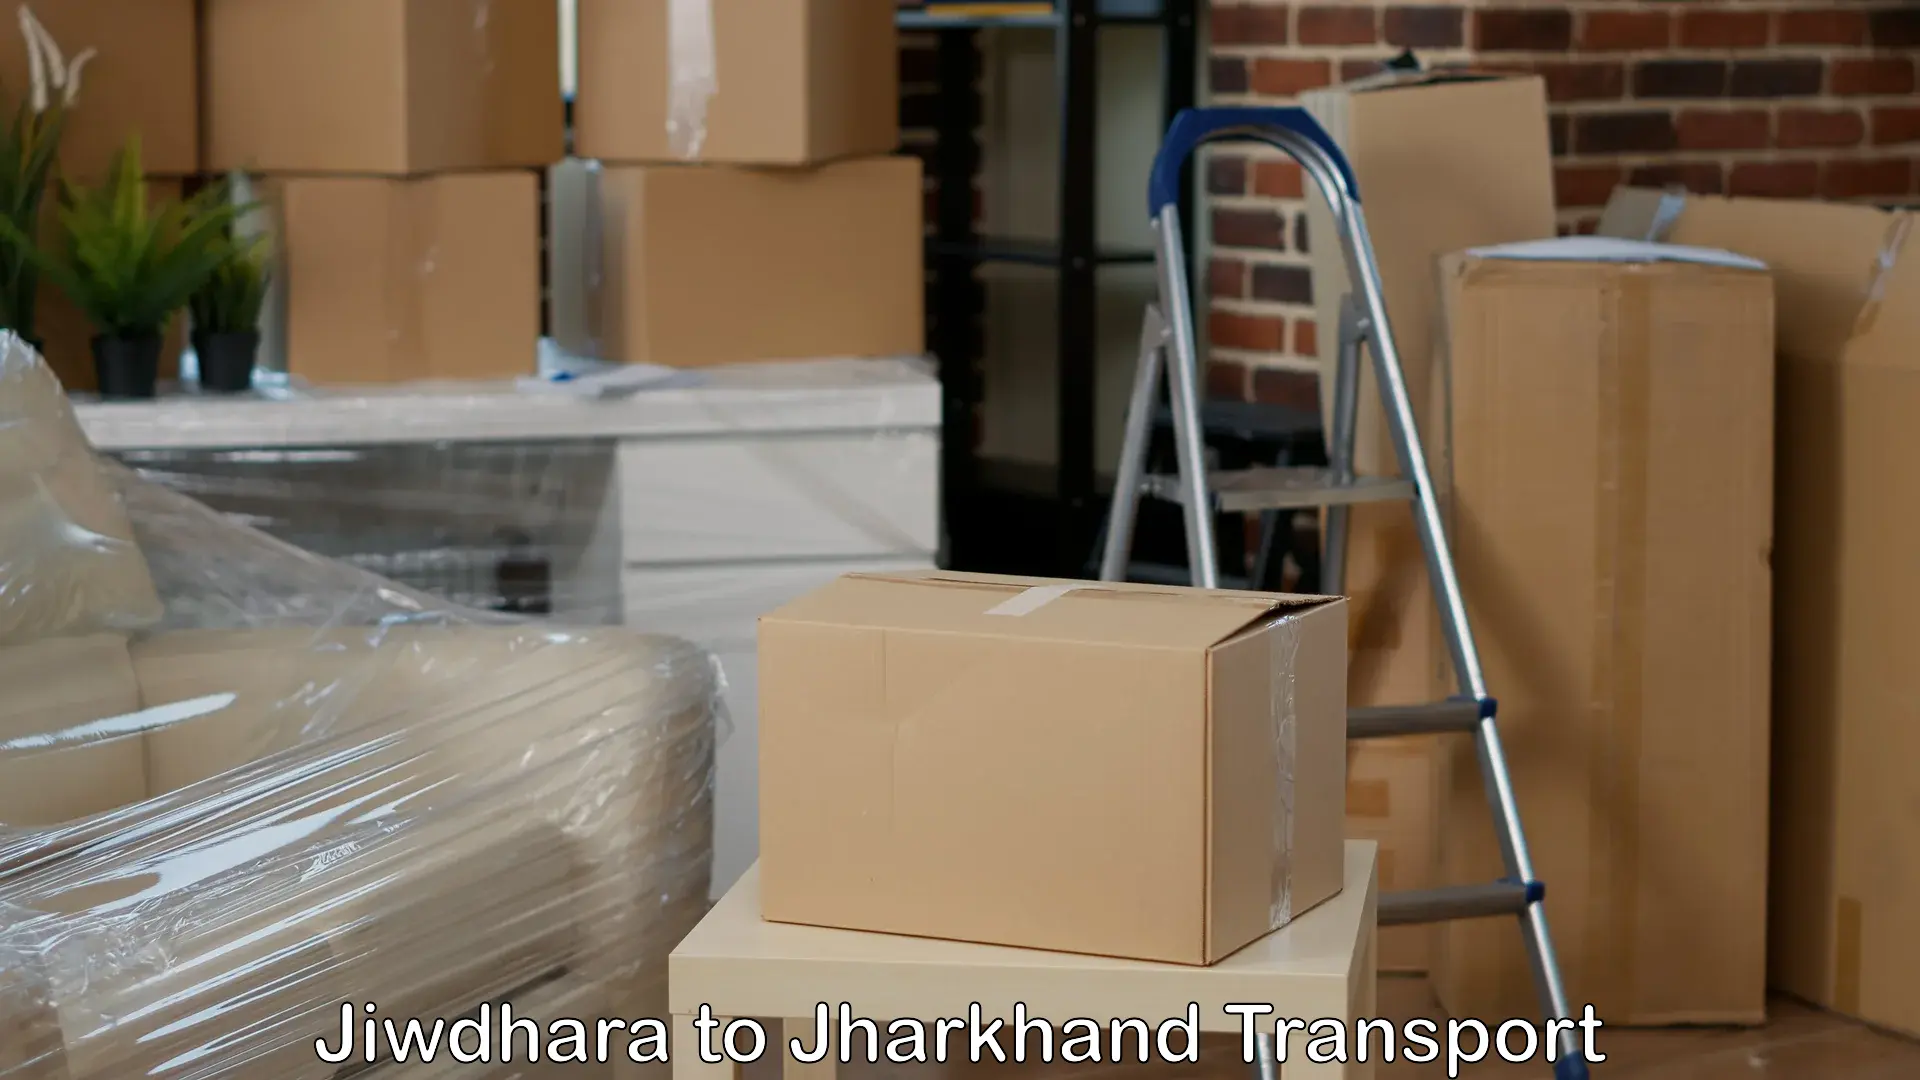 Furniture transport service Jiwdhara to Bokaro Steel City